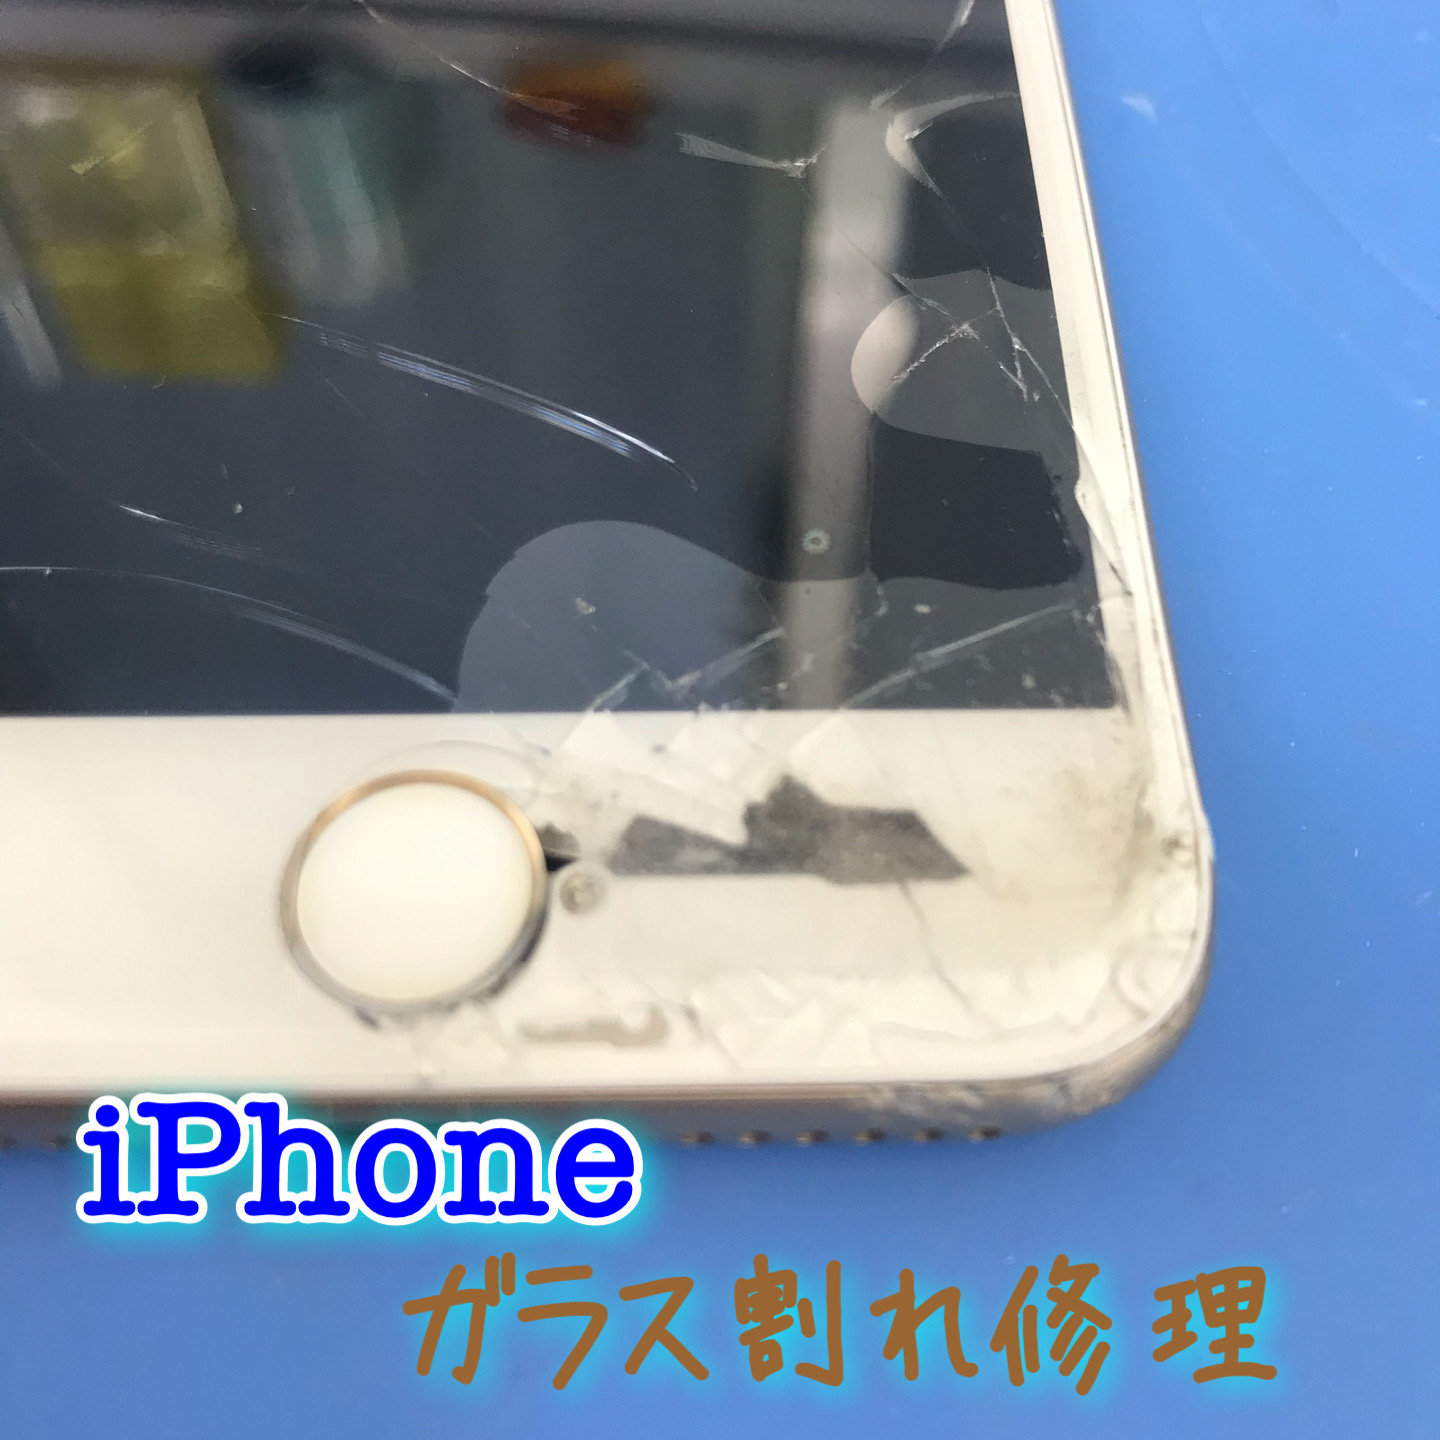 アイフォンのホームボタン横に穴が開いてる！！これって直る・・・？iPhone修理ジャパン川越店なら、約30分で修理が完了致します！